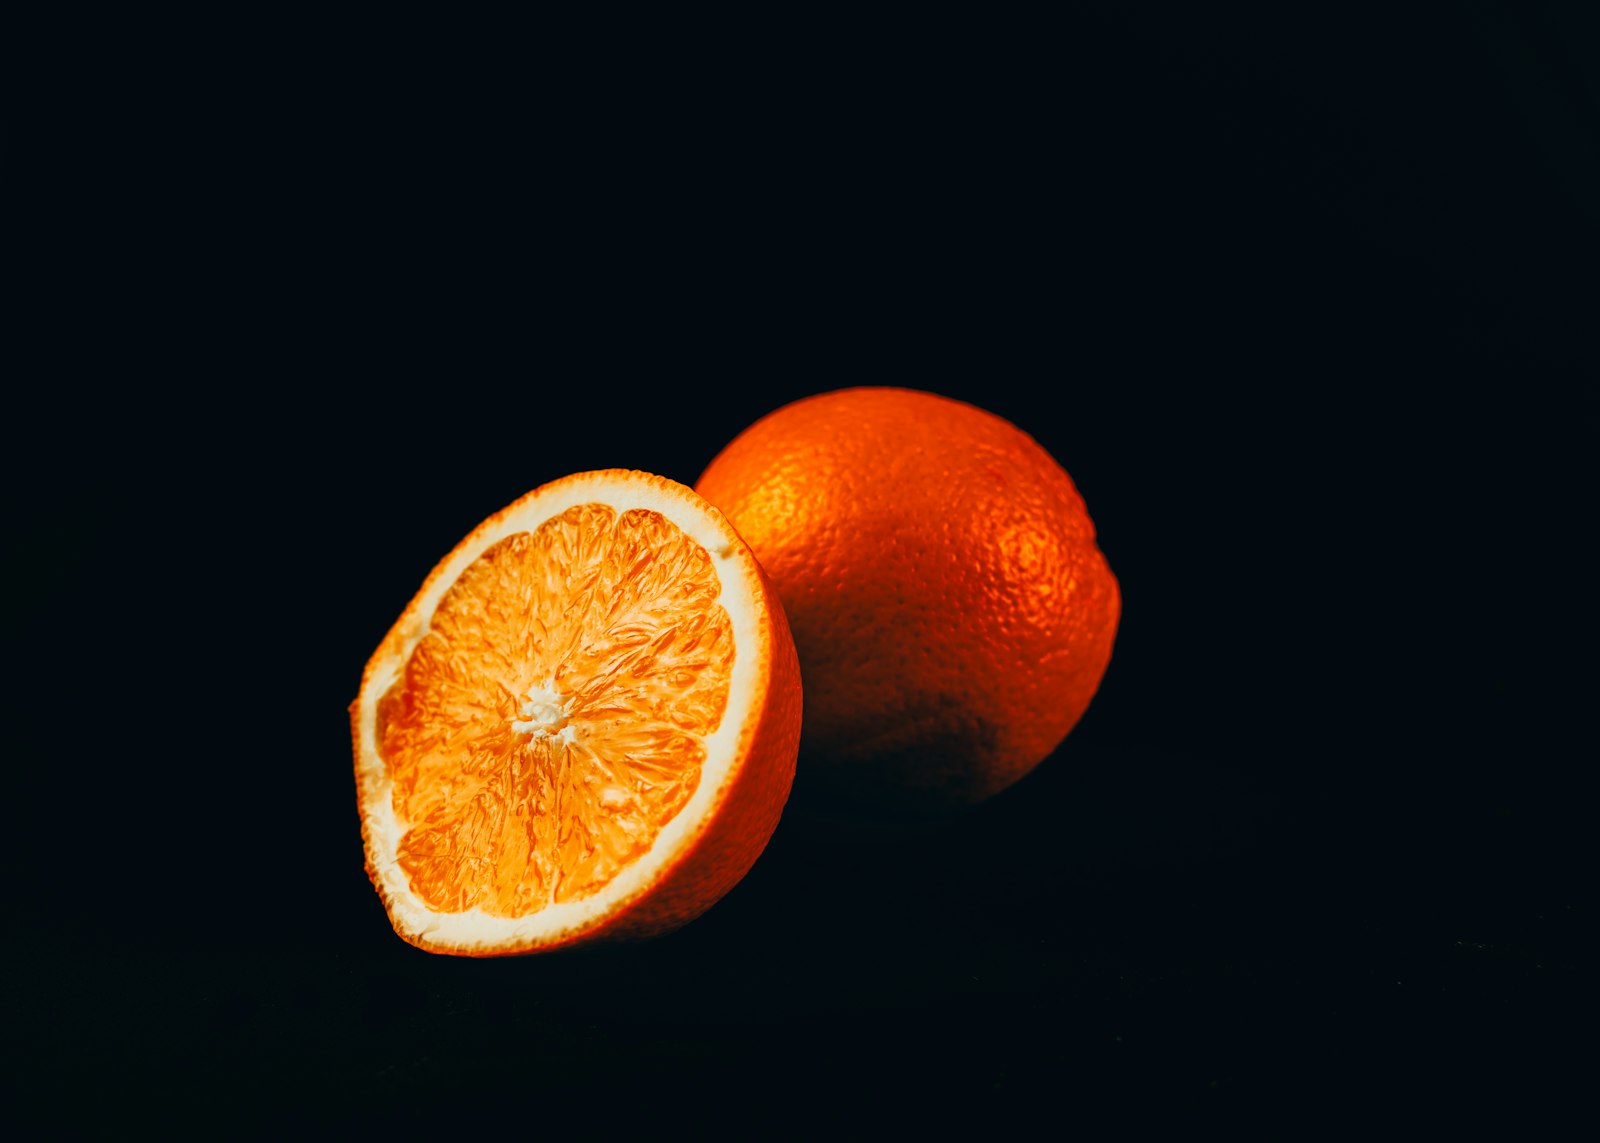 Nikon D800 + Nikon AF-S DX Nikkor 35mm F1.8G sample photo. Orange fruit on black photography